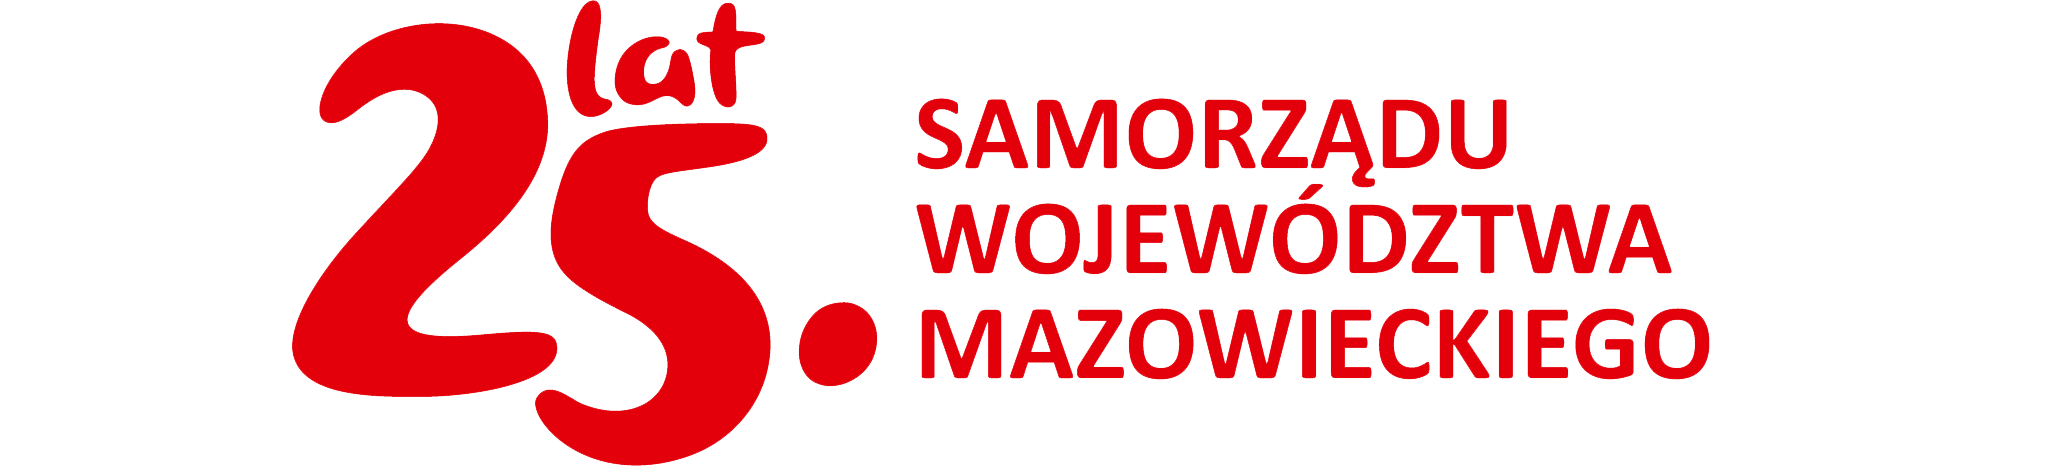 logo 25 lat Samorządu Województwa Mazowieckiego